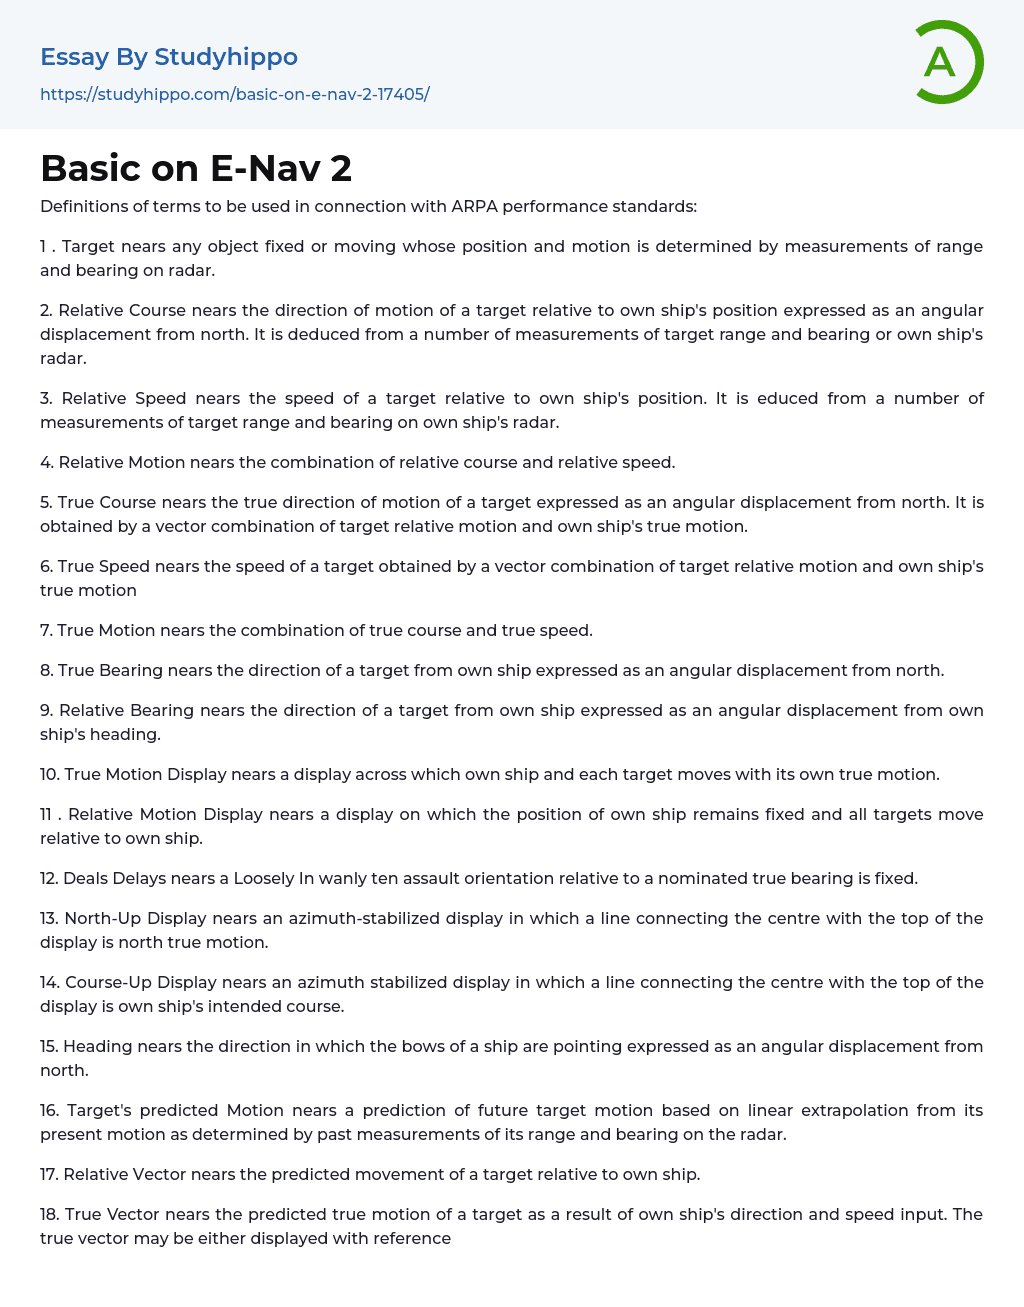 Basic on E-Nav 2 Essay Example